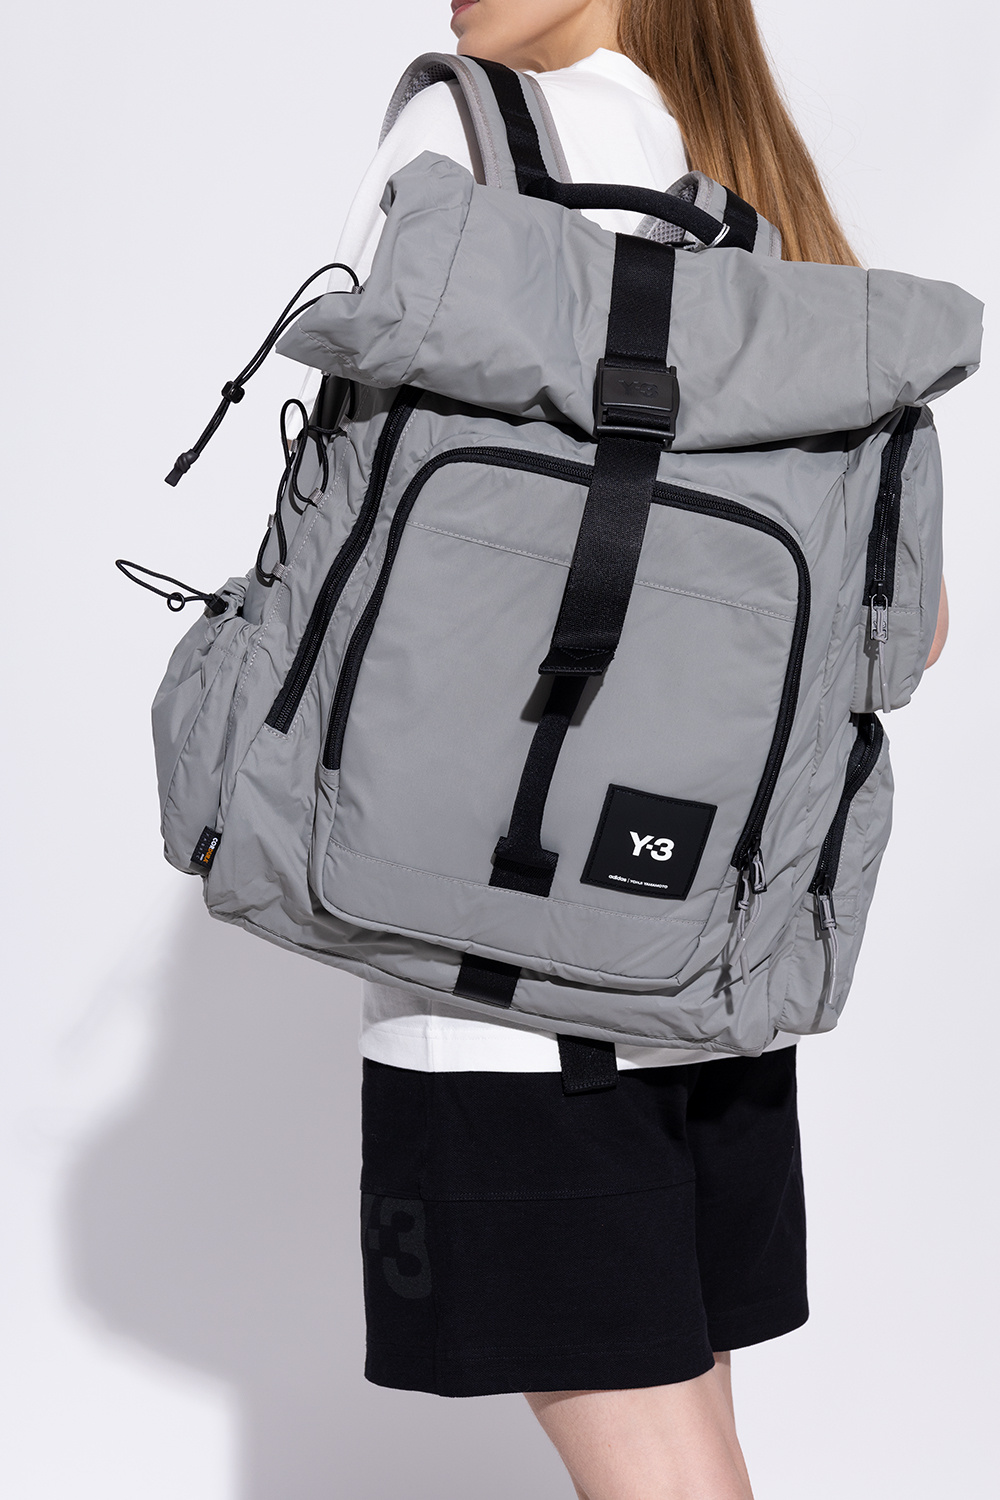 Y-3 Yohji Yamamoto goody backpack with logo